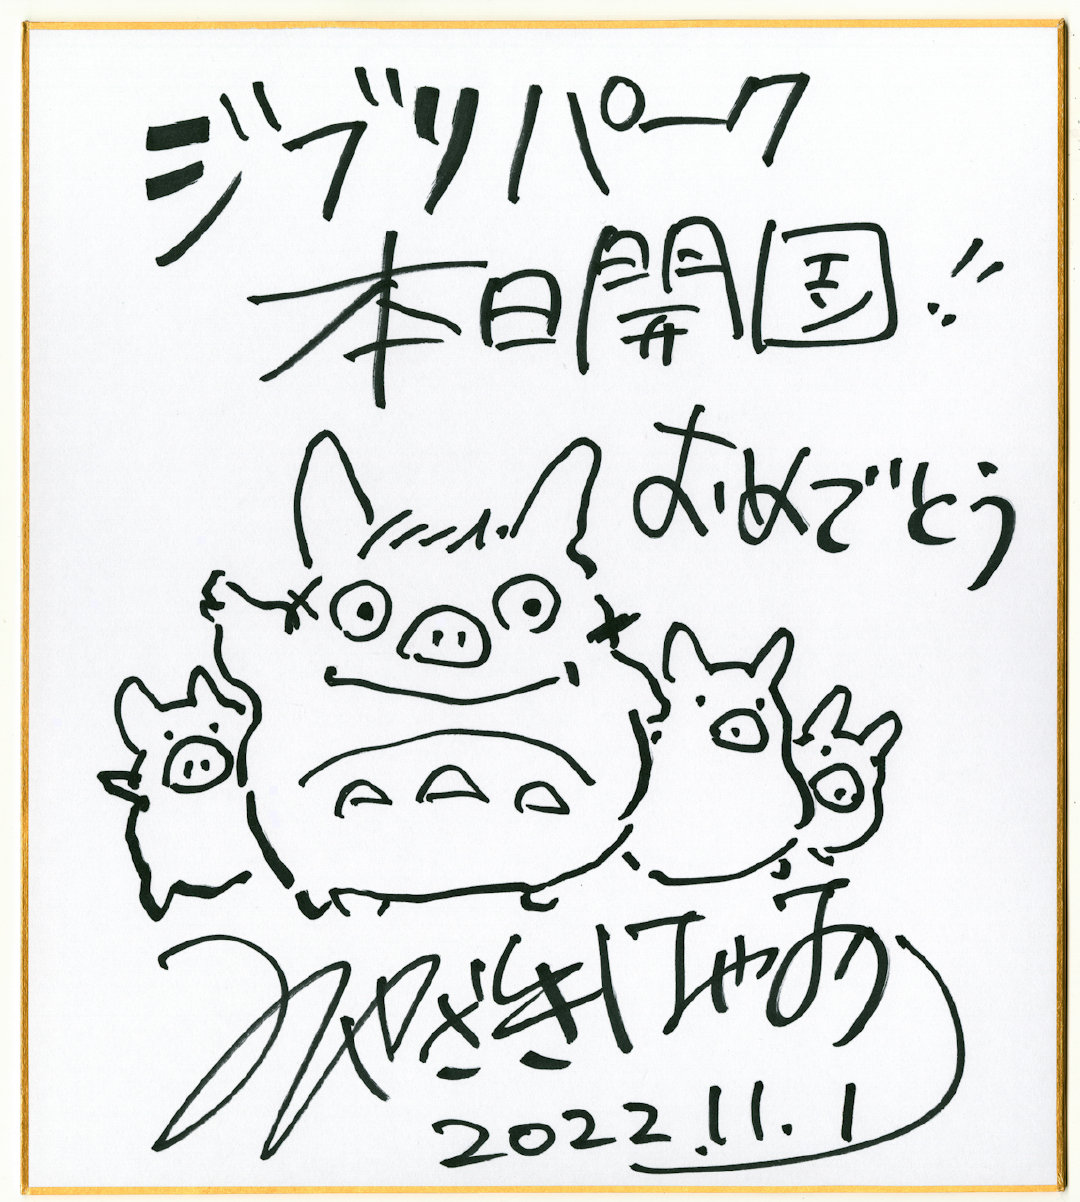 【#吉卜力公园开园#】位于日本名古屋爱知县的「吉卜力公园」今日正式开园，吉卜力工作室公开了由宫崎骏亲自手绘的贺图。 ​​